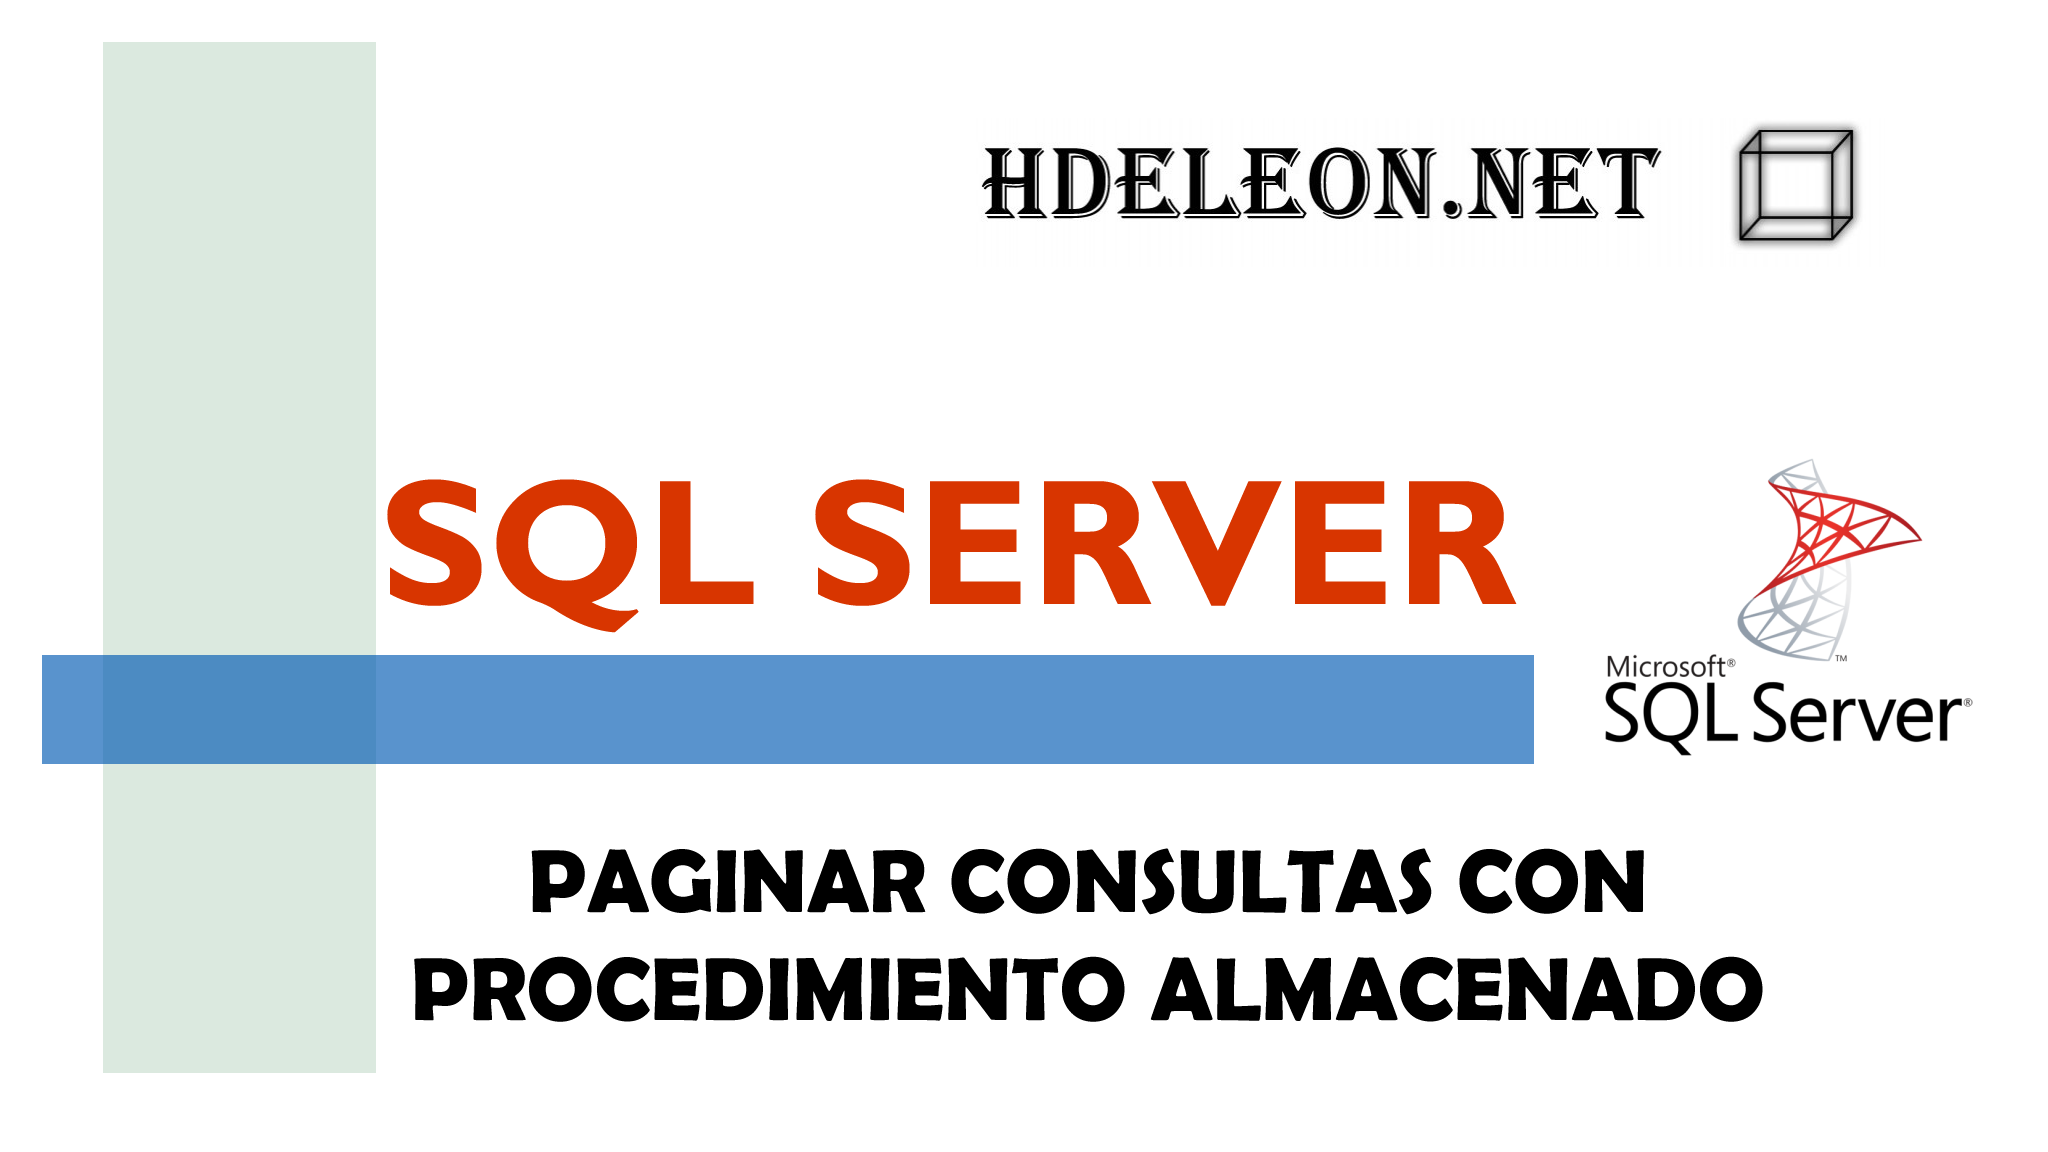 ¿Cómo hacer un paginado con SQL Server?, Transact-SQL, Procedimiento Almacenado